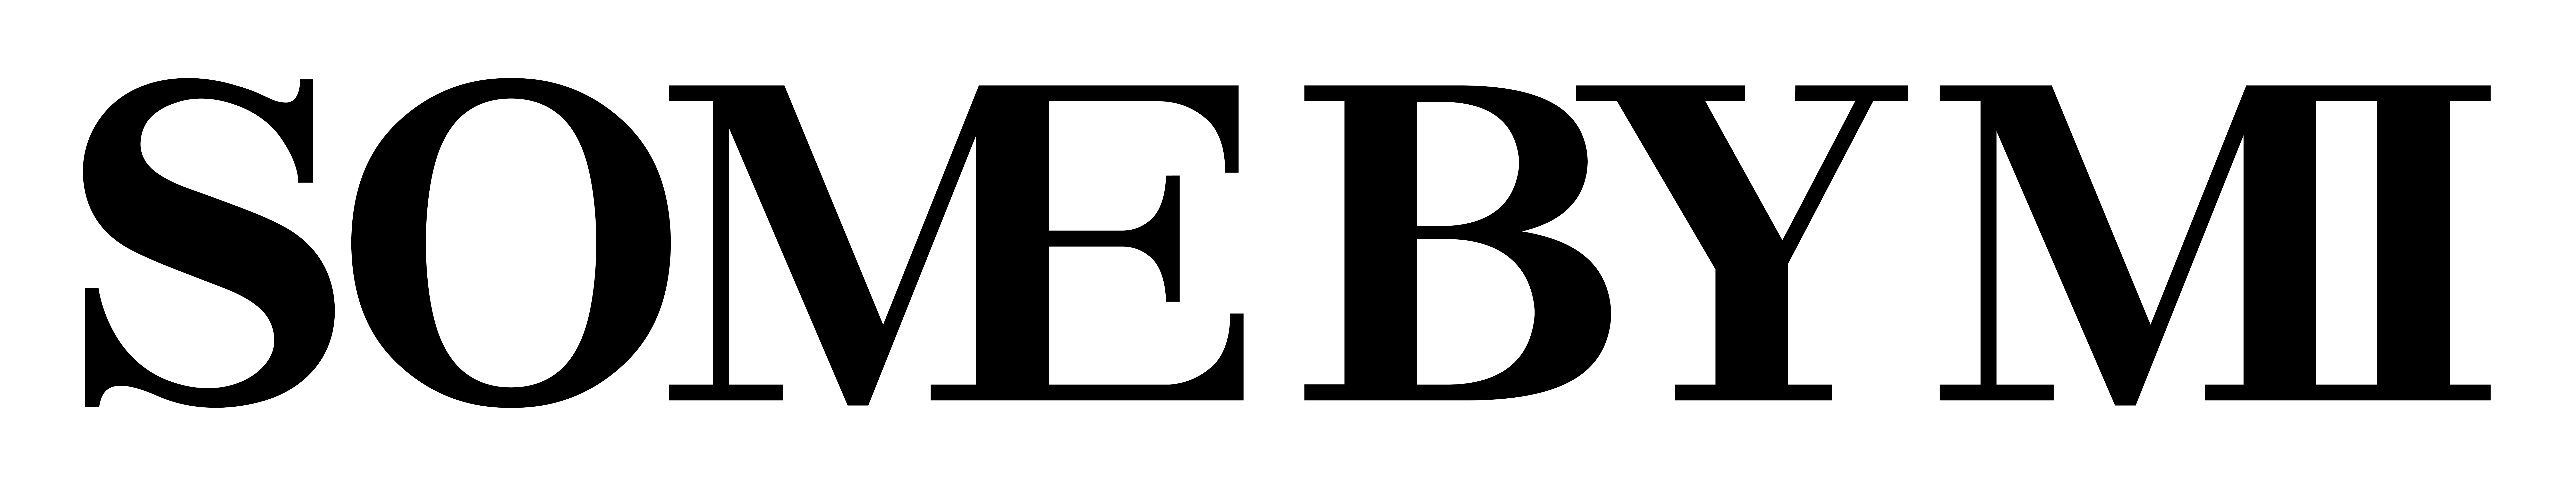 logo THƯƠNG HIỆU MỸ PHẨM HÀN QUỐC CÓ MẶT TẠI 40+ QUỐC GIA